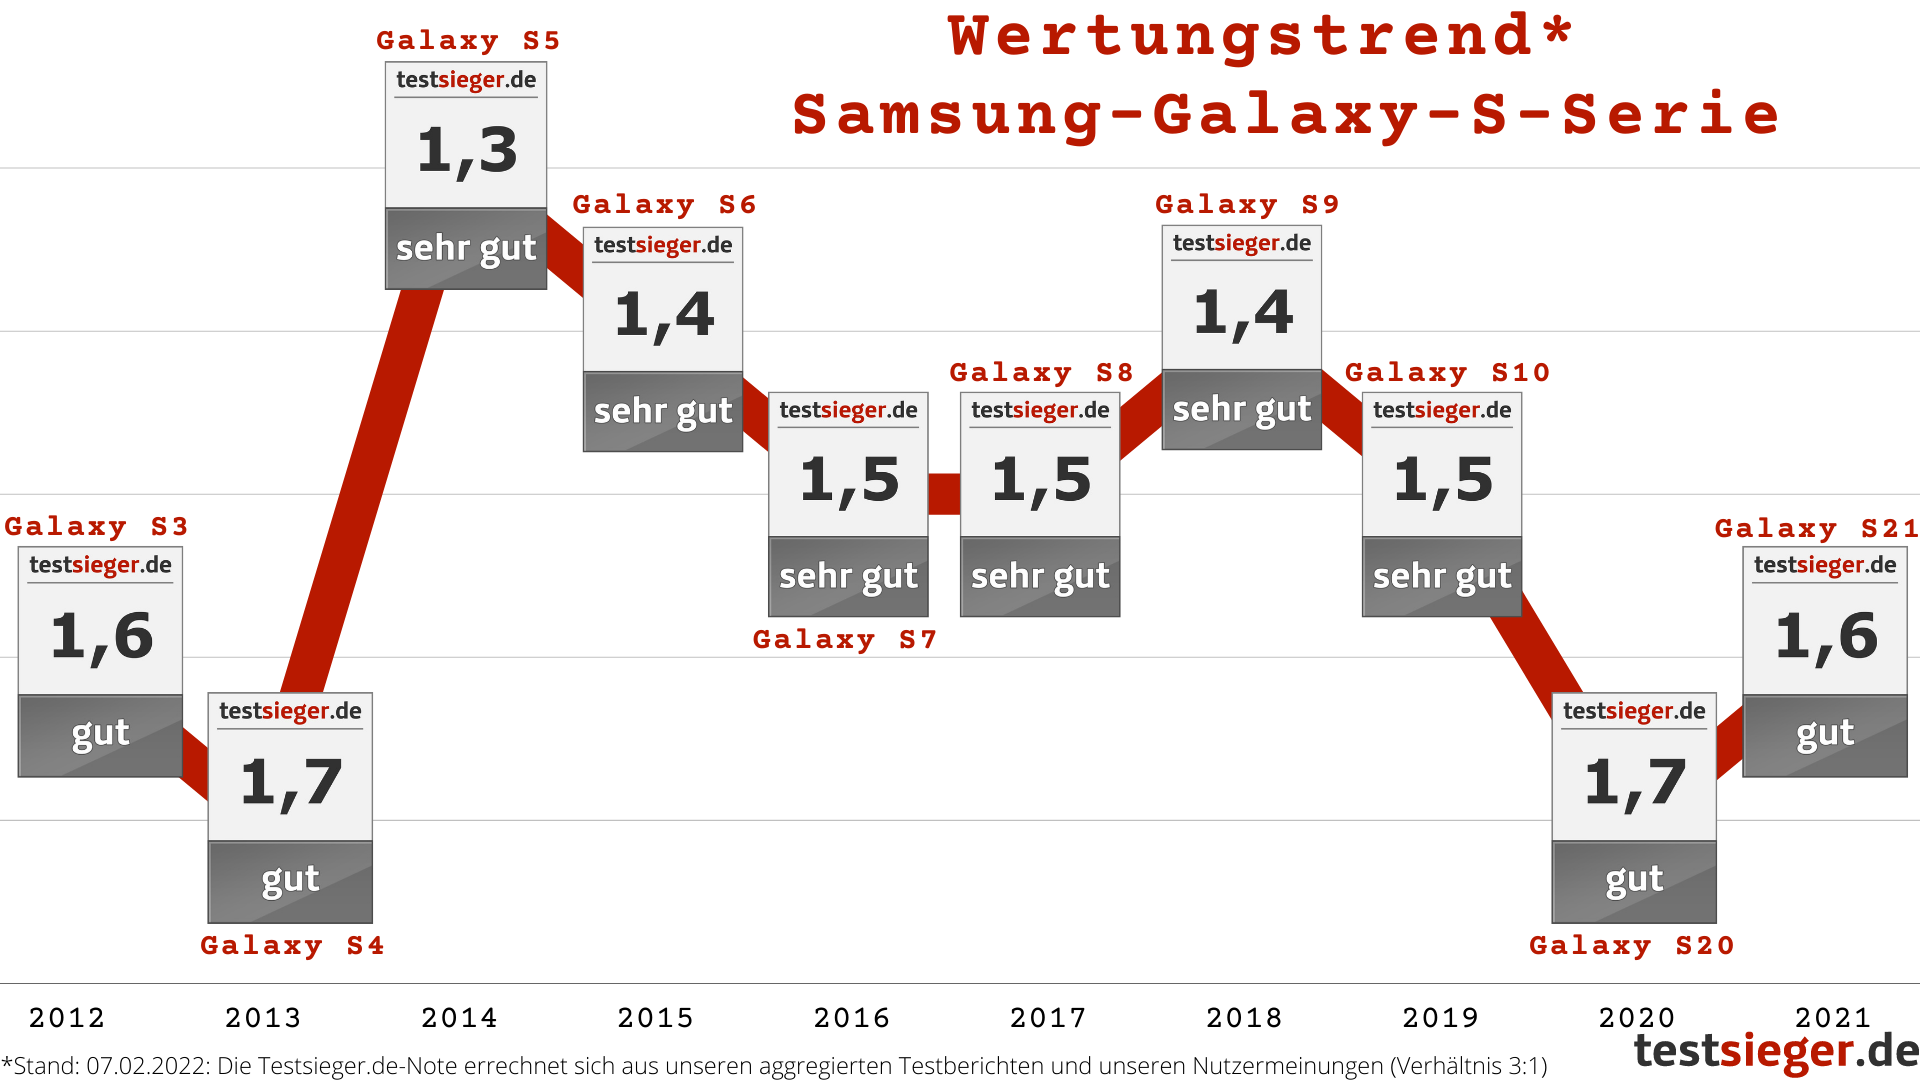 Samsungs Galaxy-S-Serie im Wertungstrend 